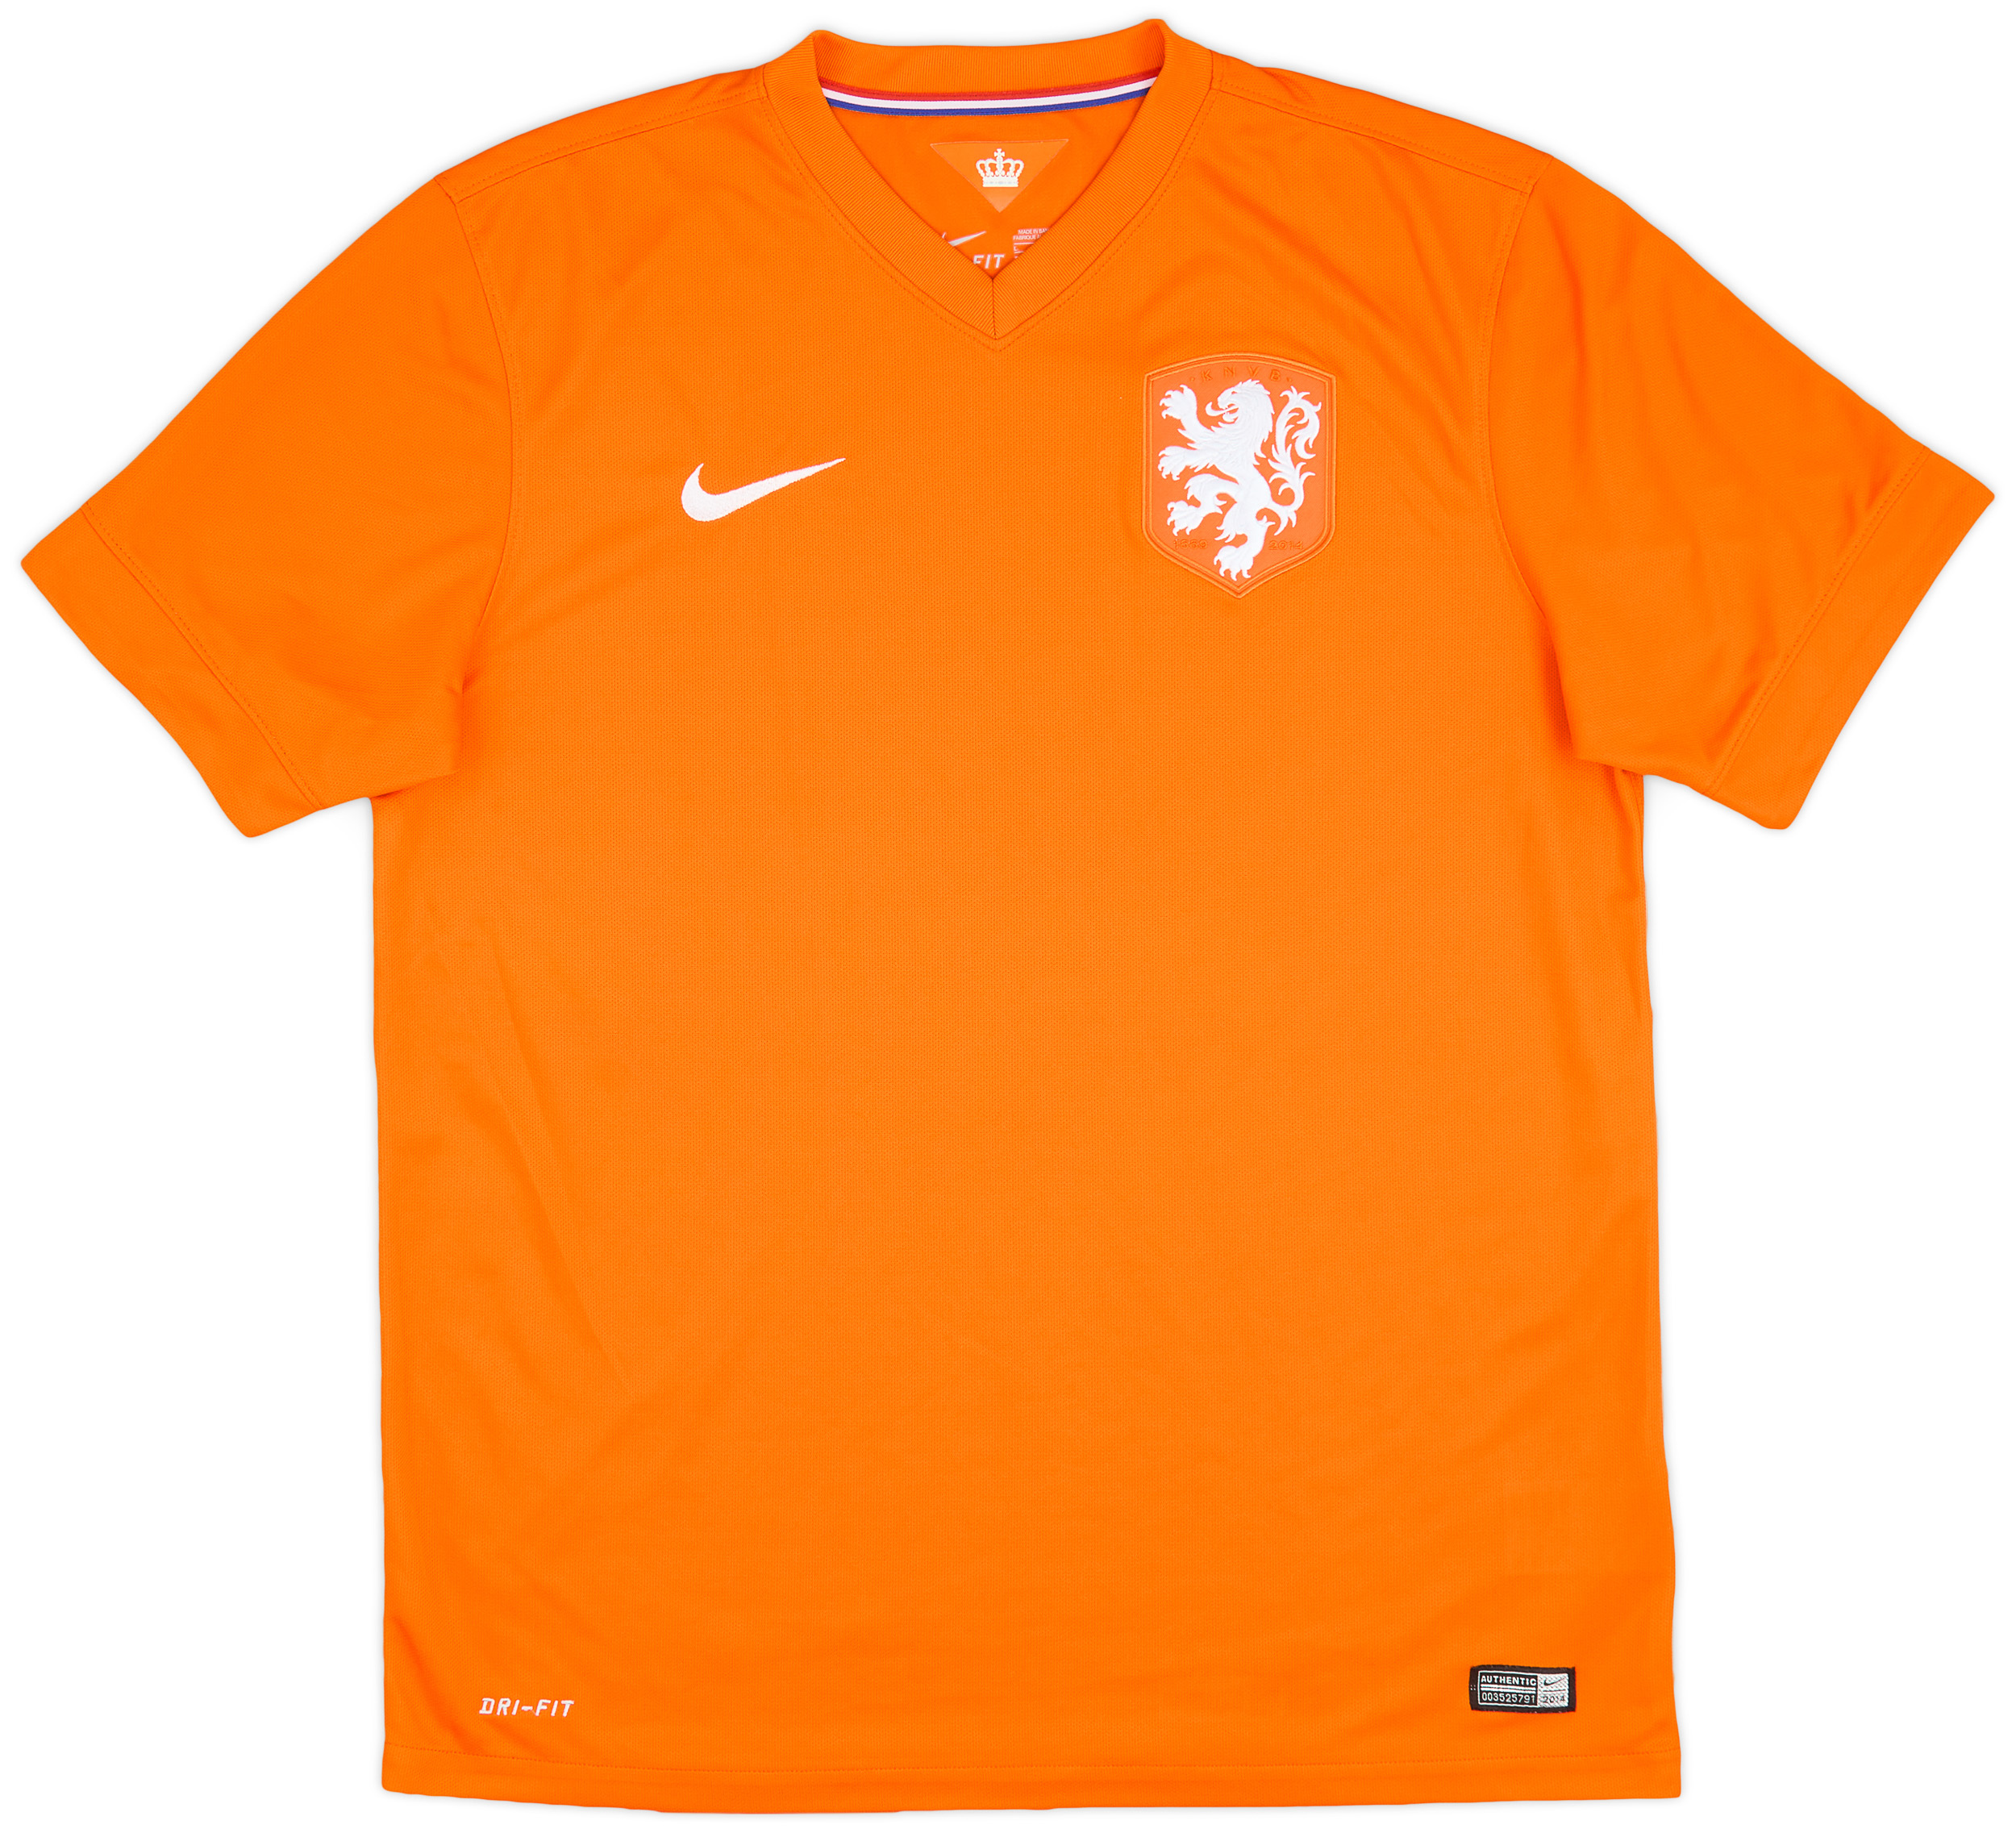 2014-15 Netherlands Home Shirt - 9/10 - ()